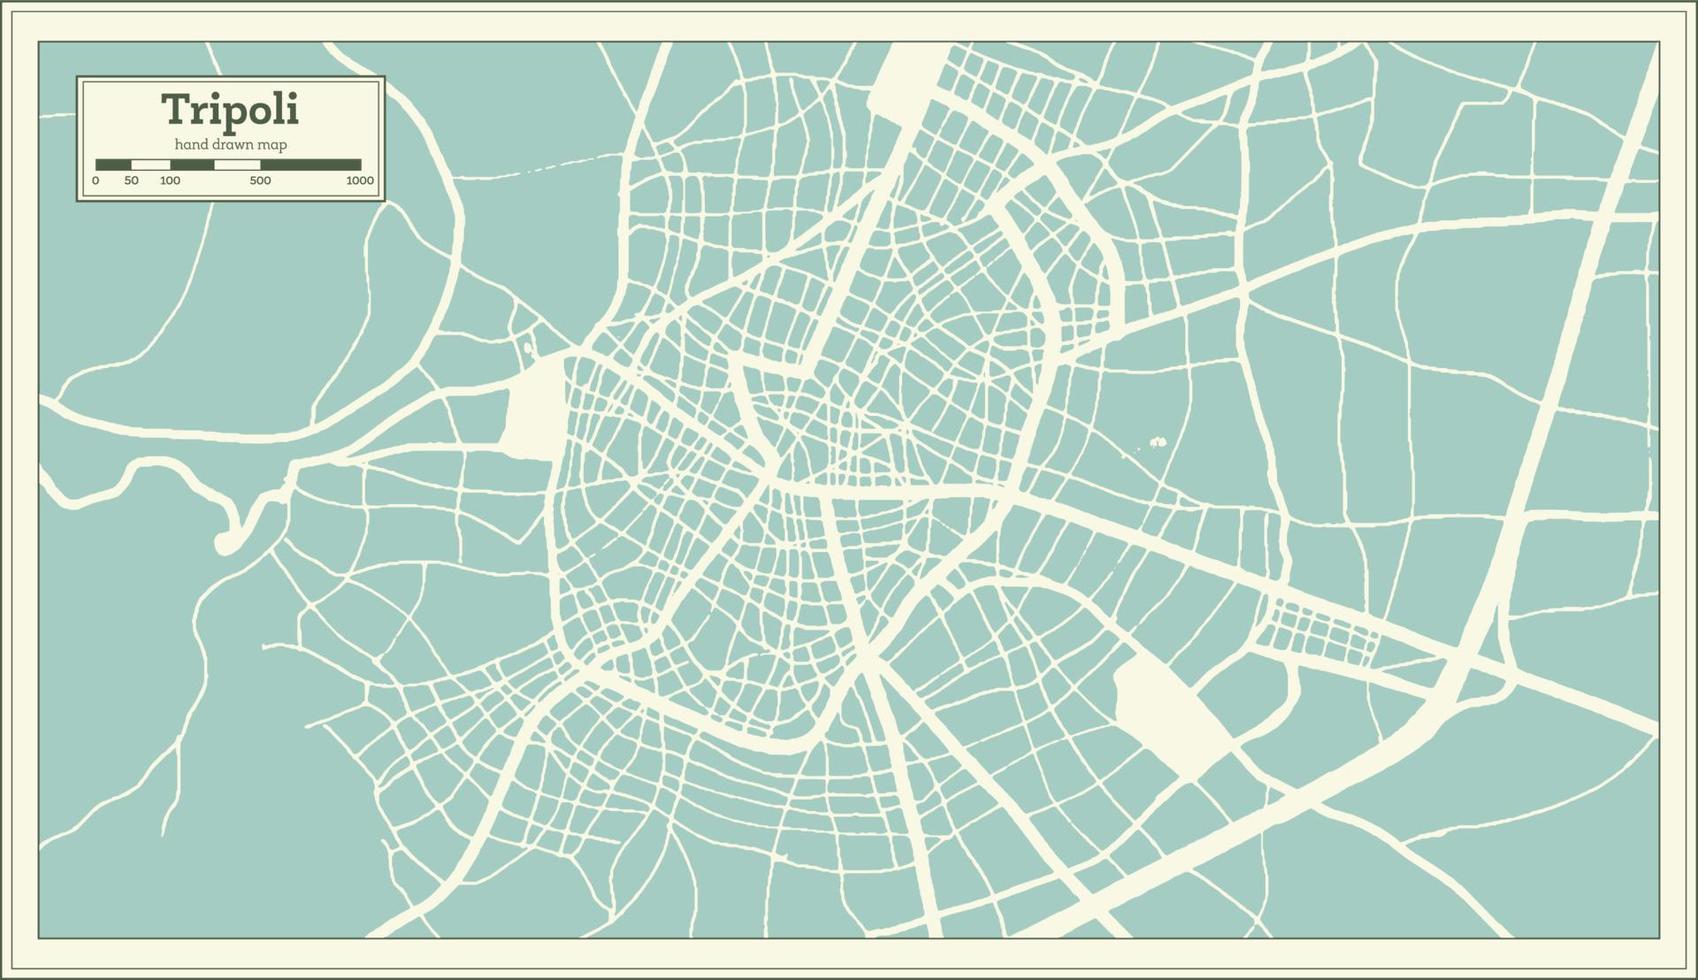 plan de la ville de tripoli grèce dans un style rétro. carte muette. vecteur